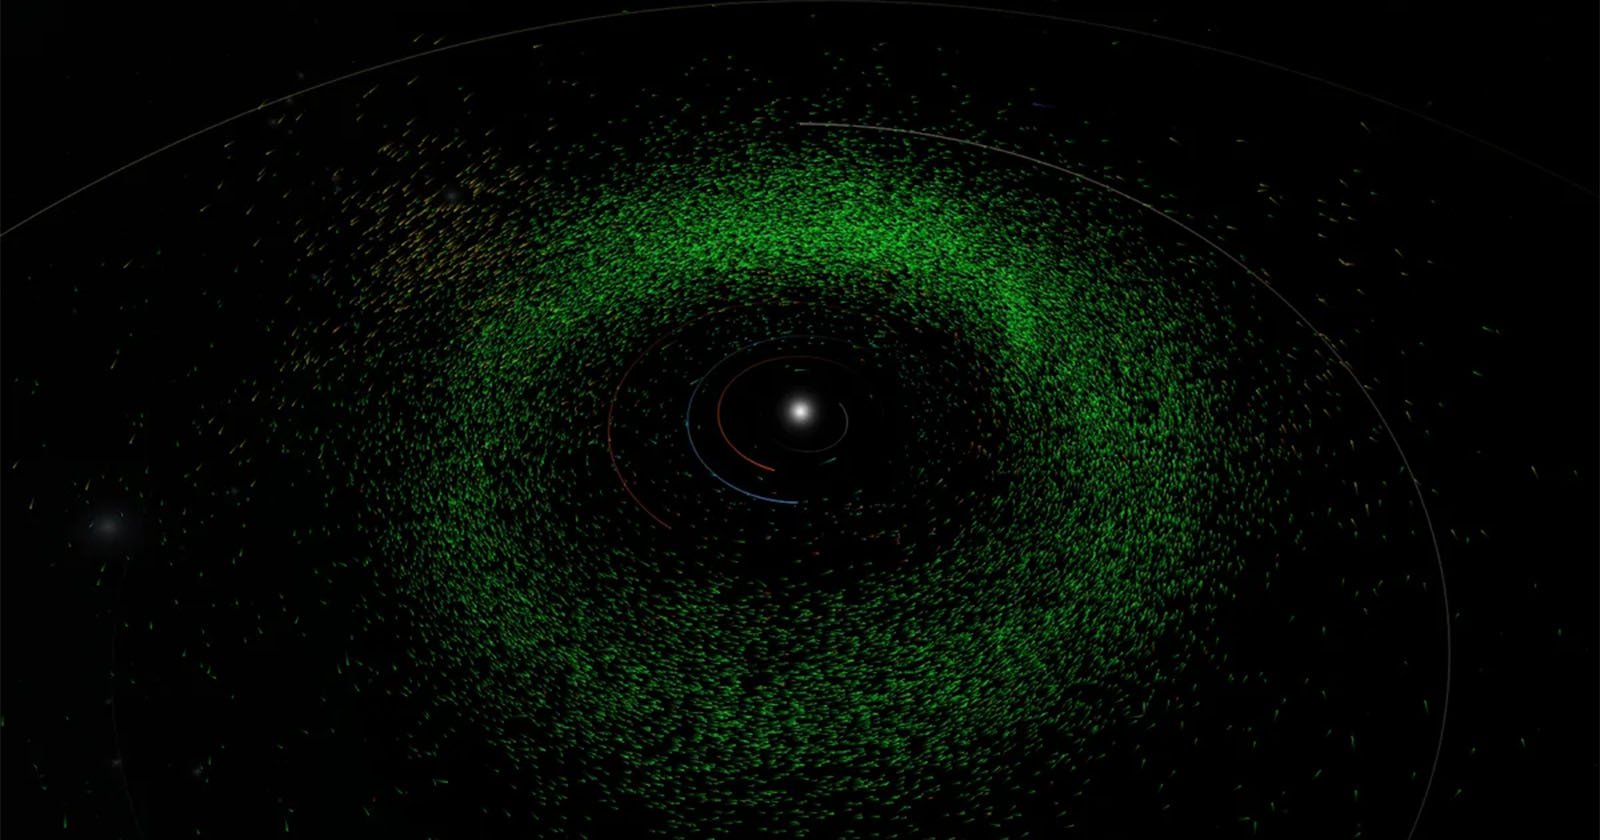 La IA encuentra casi 30.000 asteroides desconocidos en fotografías de telescopios existentes